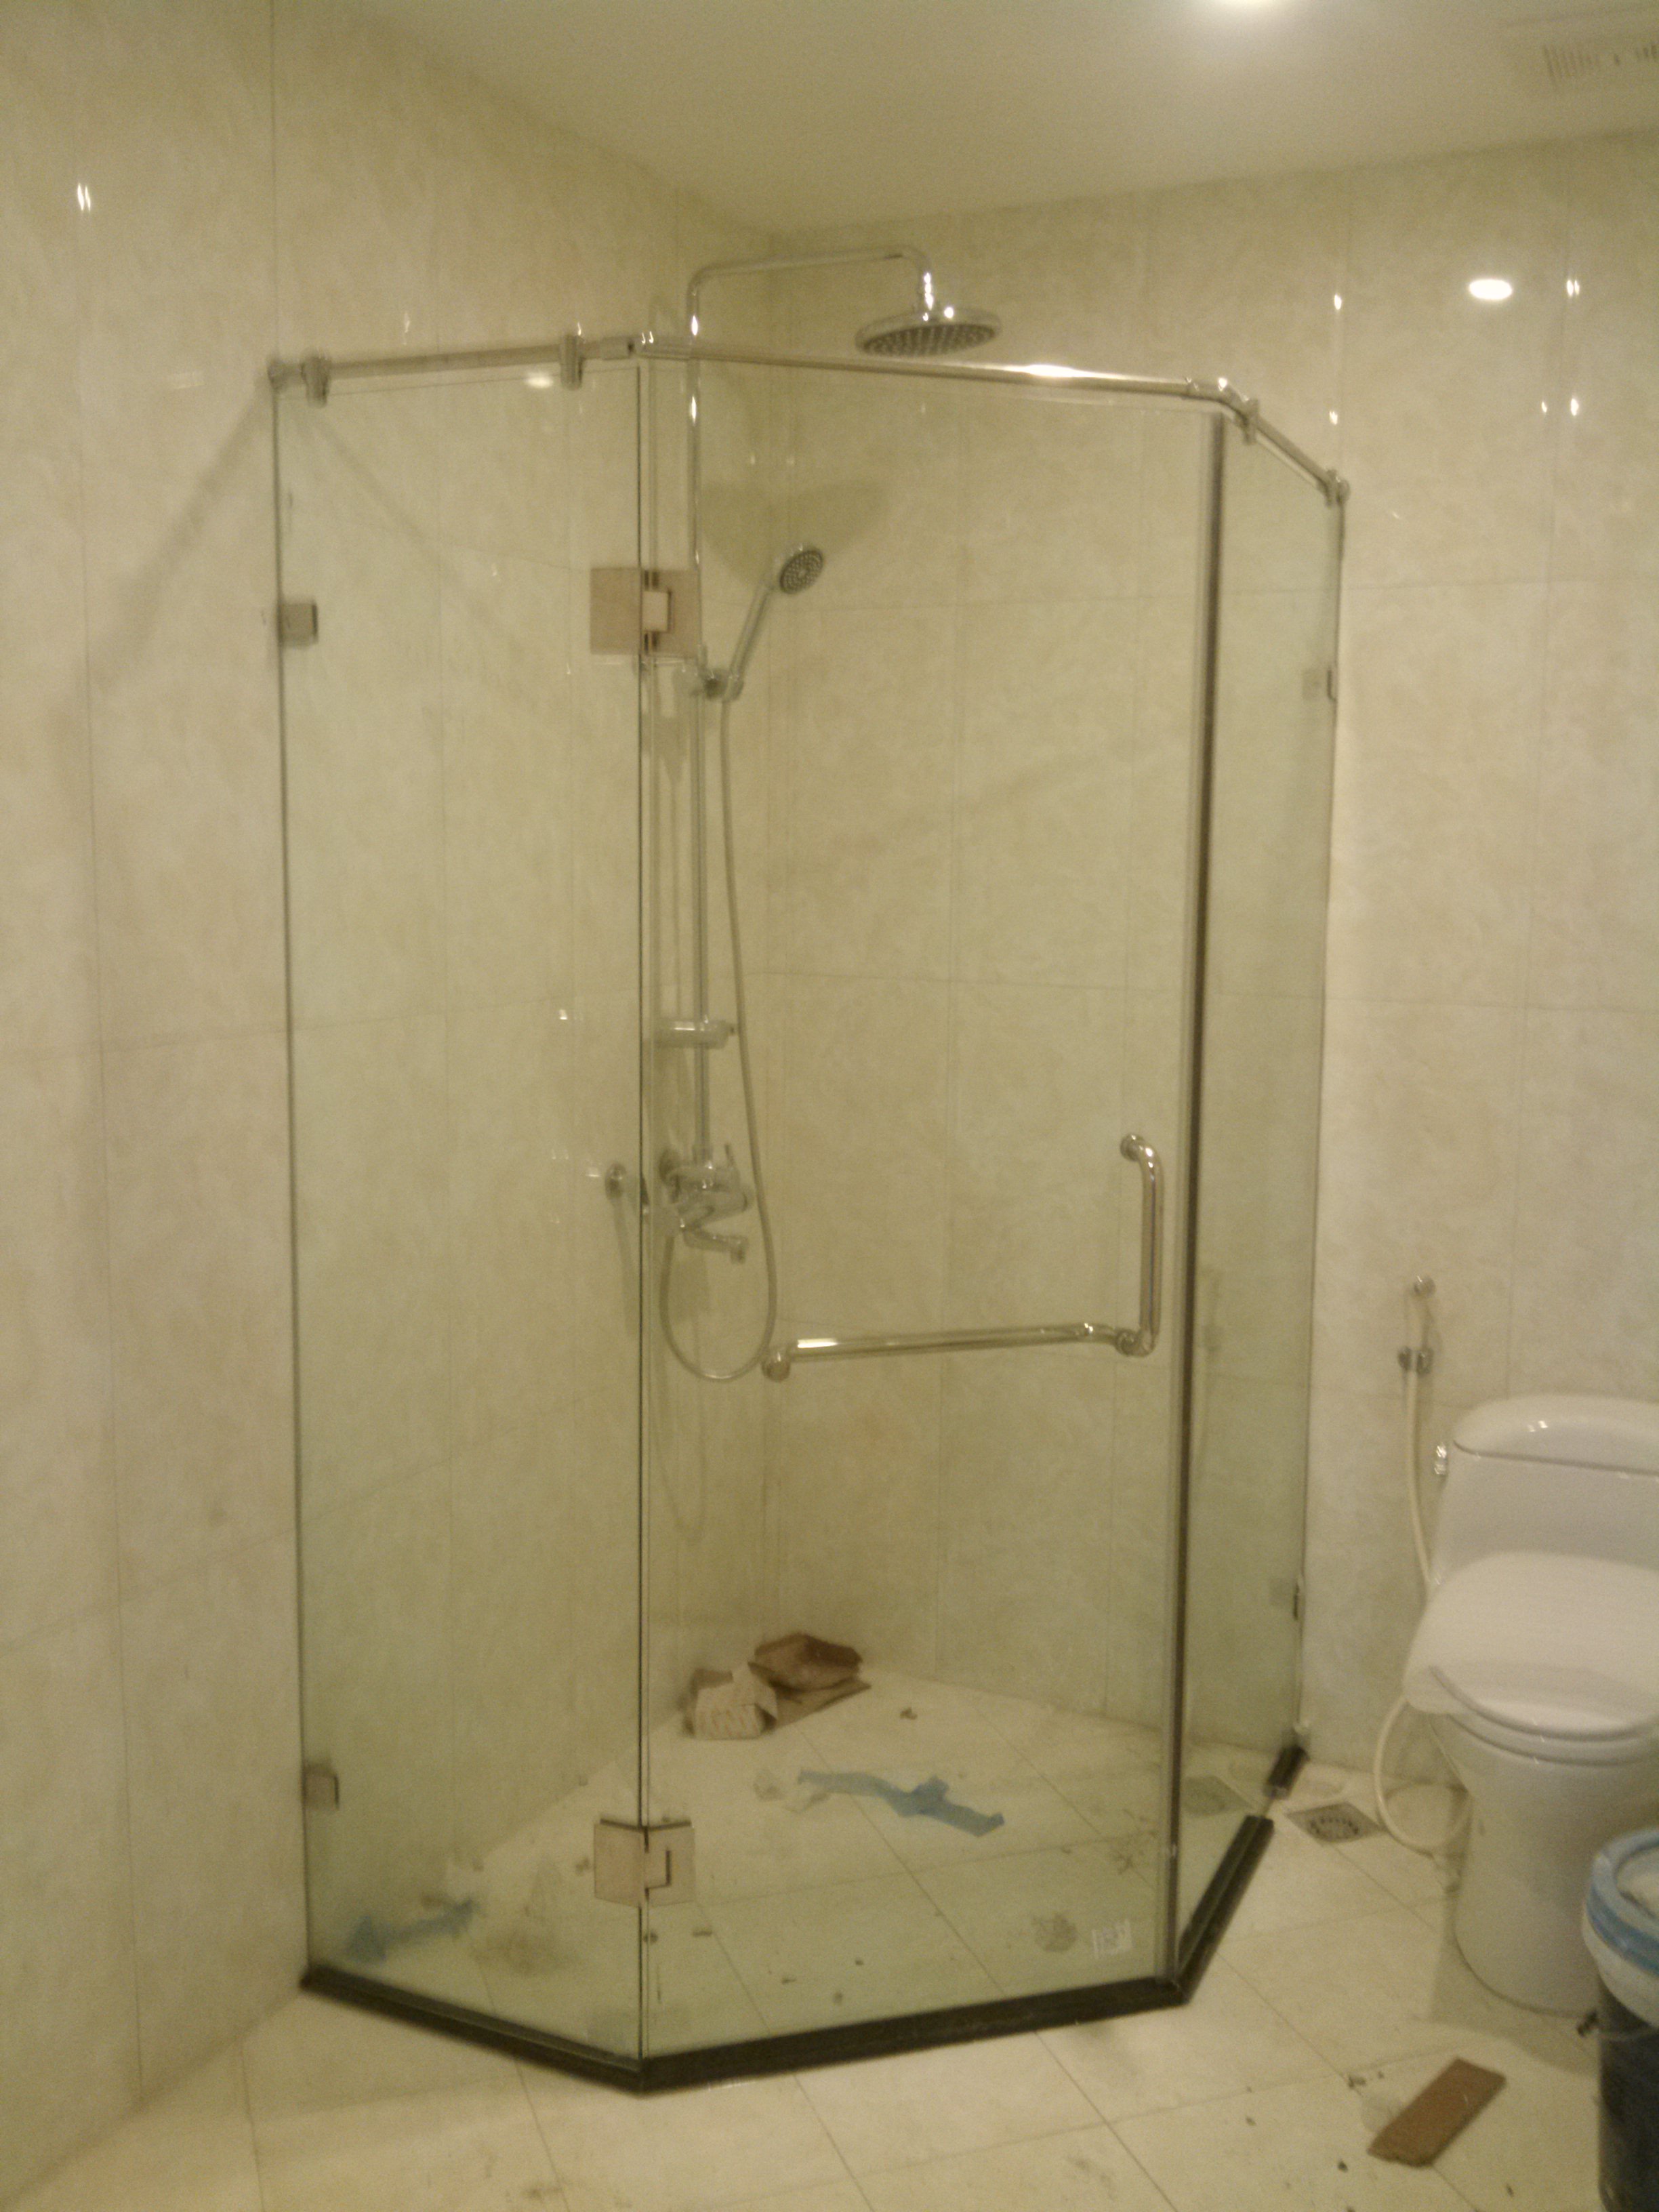 Vách kính phòng tắm Việt Phong 2024: Sự kết hợp hoàn hảo giữa công nghệ và thiết kế đã giúp sản phẩm Vách kính phòng tắm Việt Phong 2024 trở thành điểm nhấn của các sản phẩm phòng tắm trên thị trường. Giúp tăng độ tiện nghi, sự an toàn và đẳng cấp cho không gian phòng tắm của bạn.